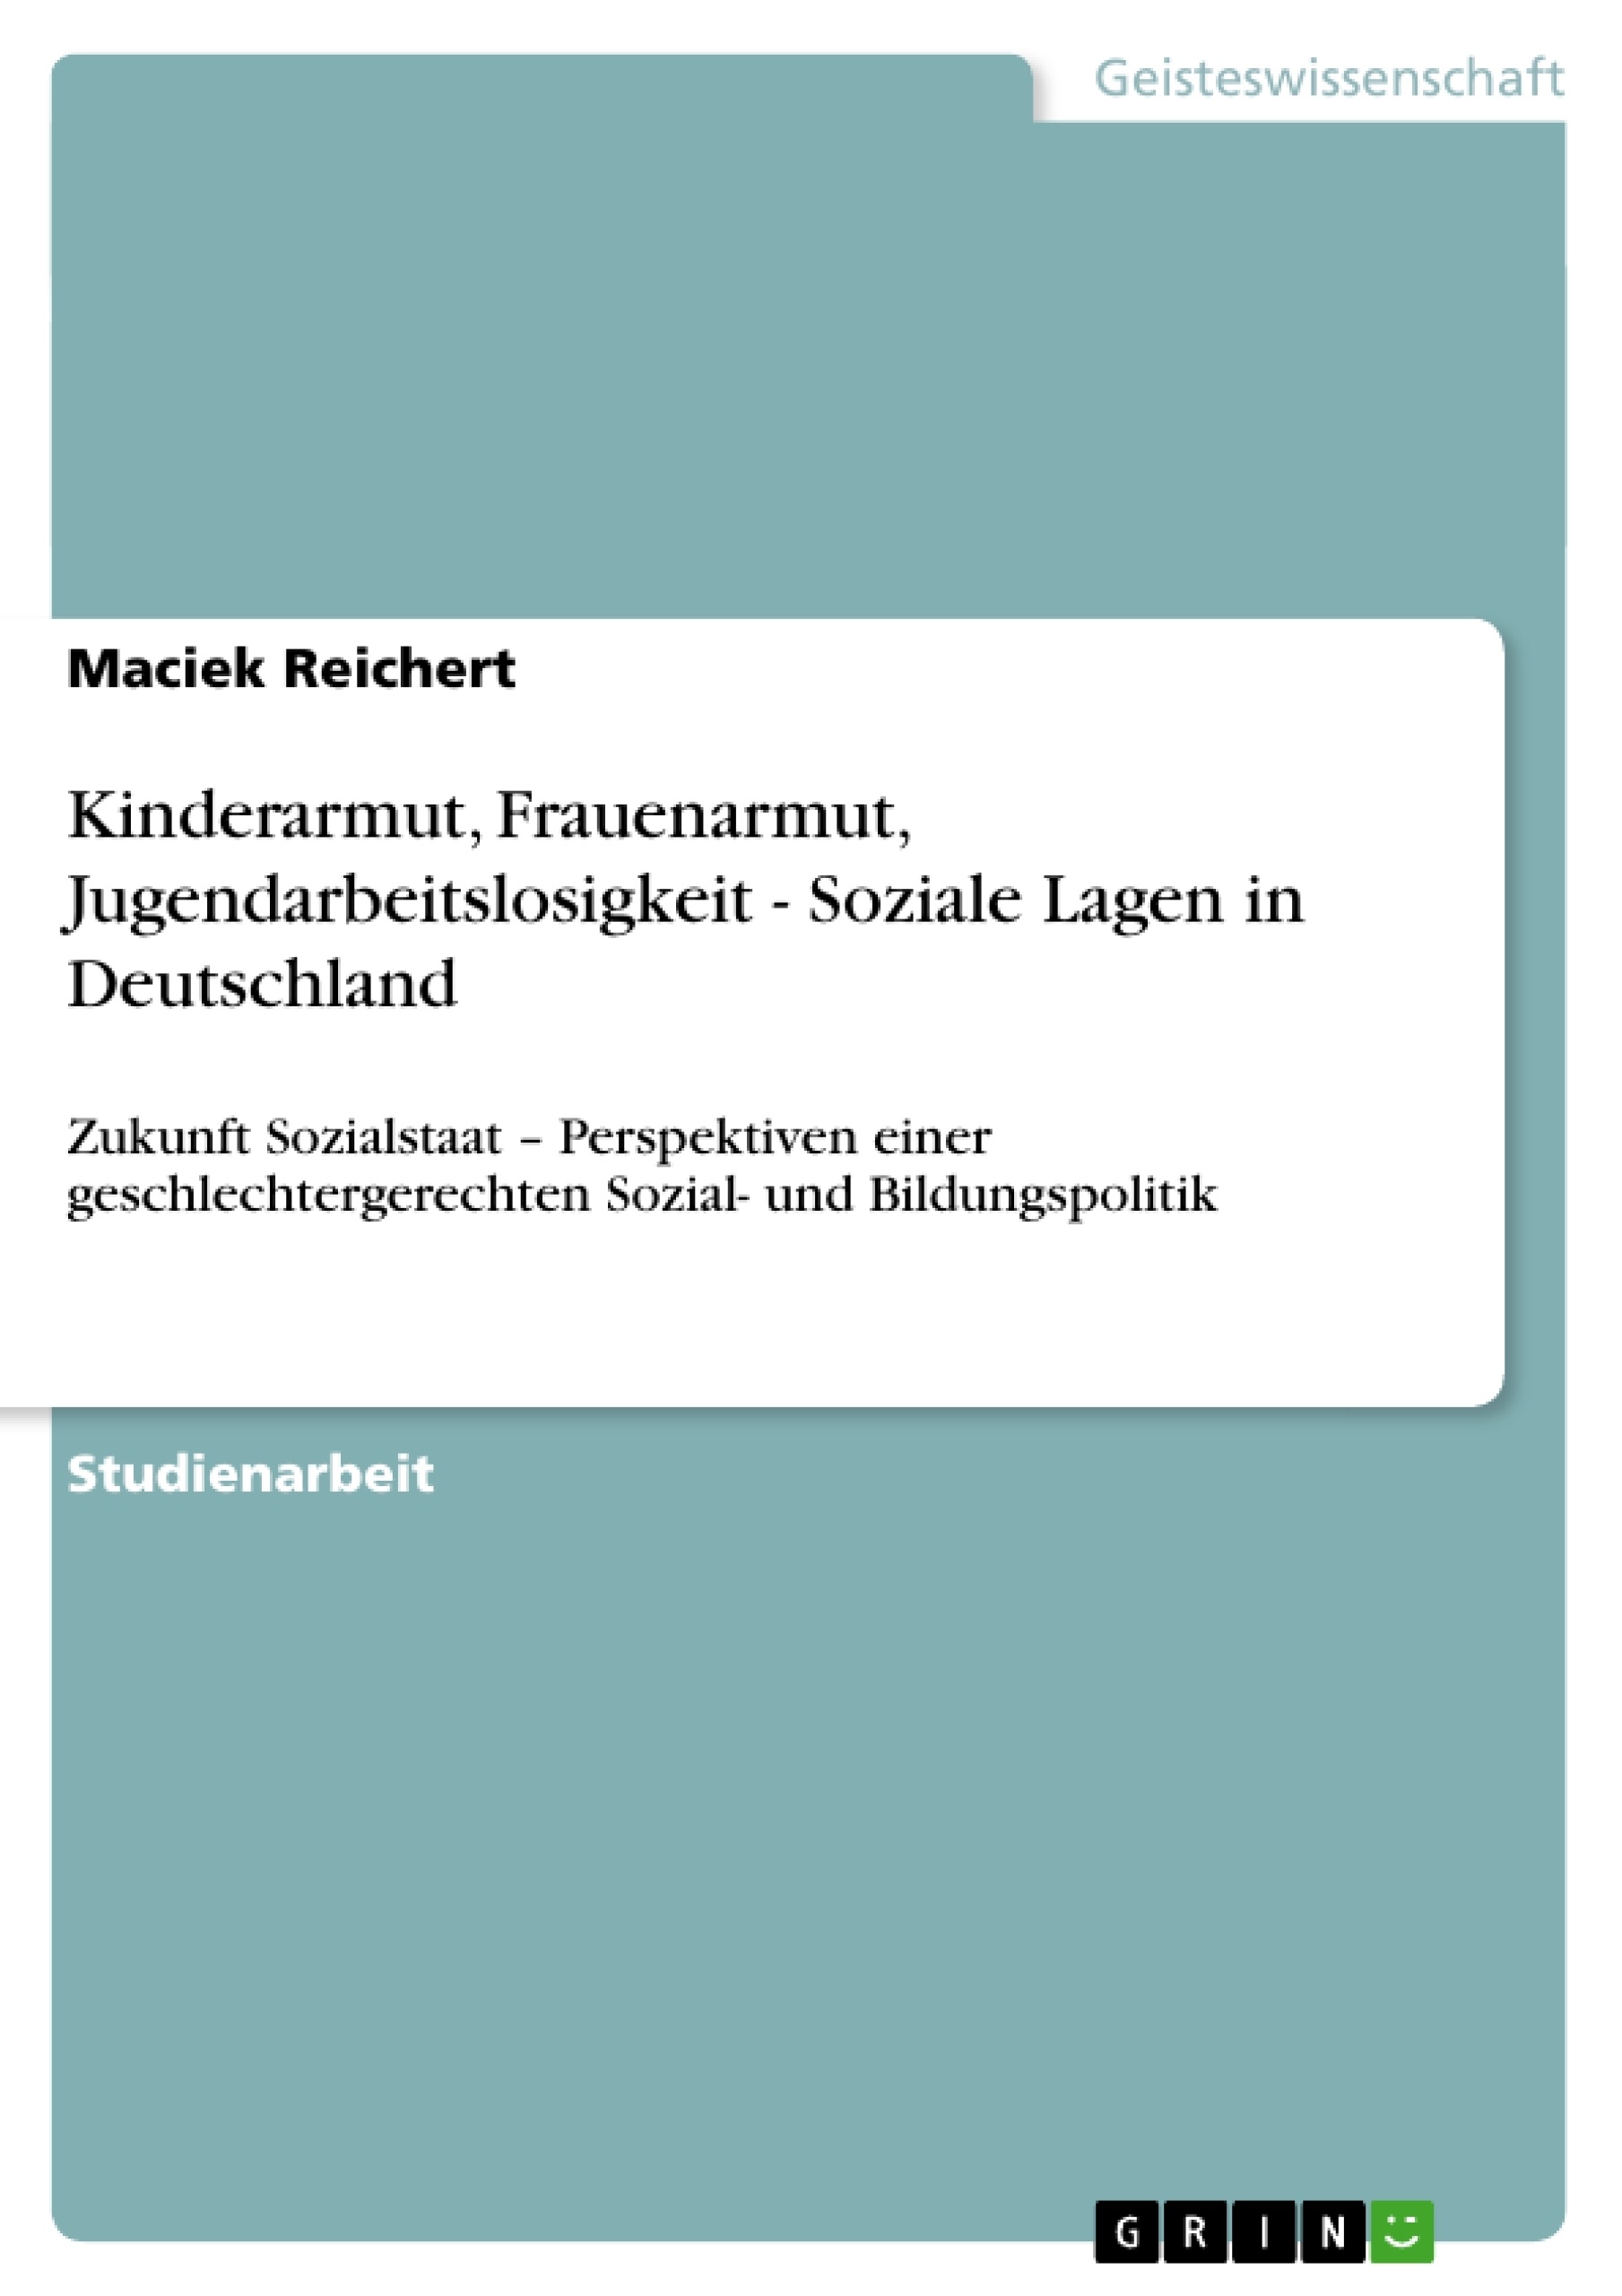 Título: Kinderarmut, Frauenarmut, Jugendarbeitslosigkeit - Soziale Lagen in Deutschland